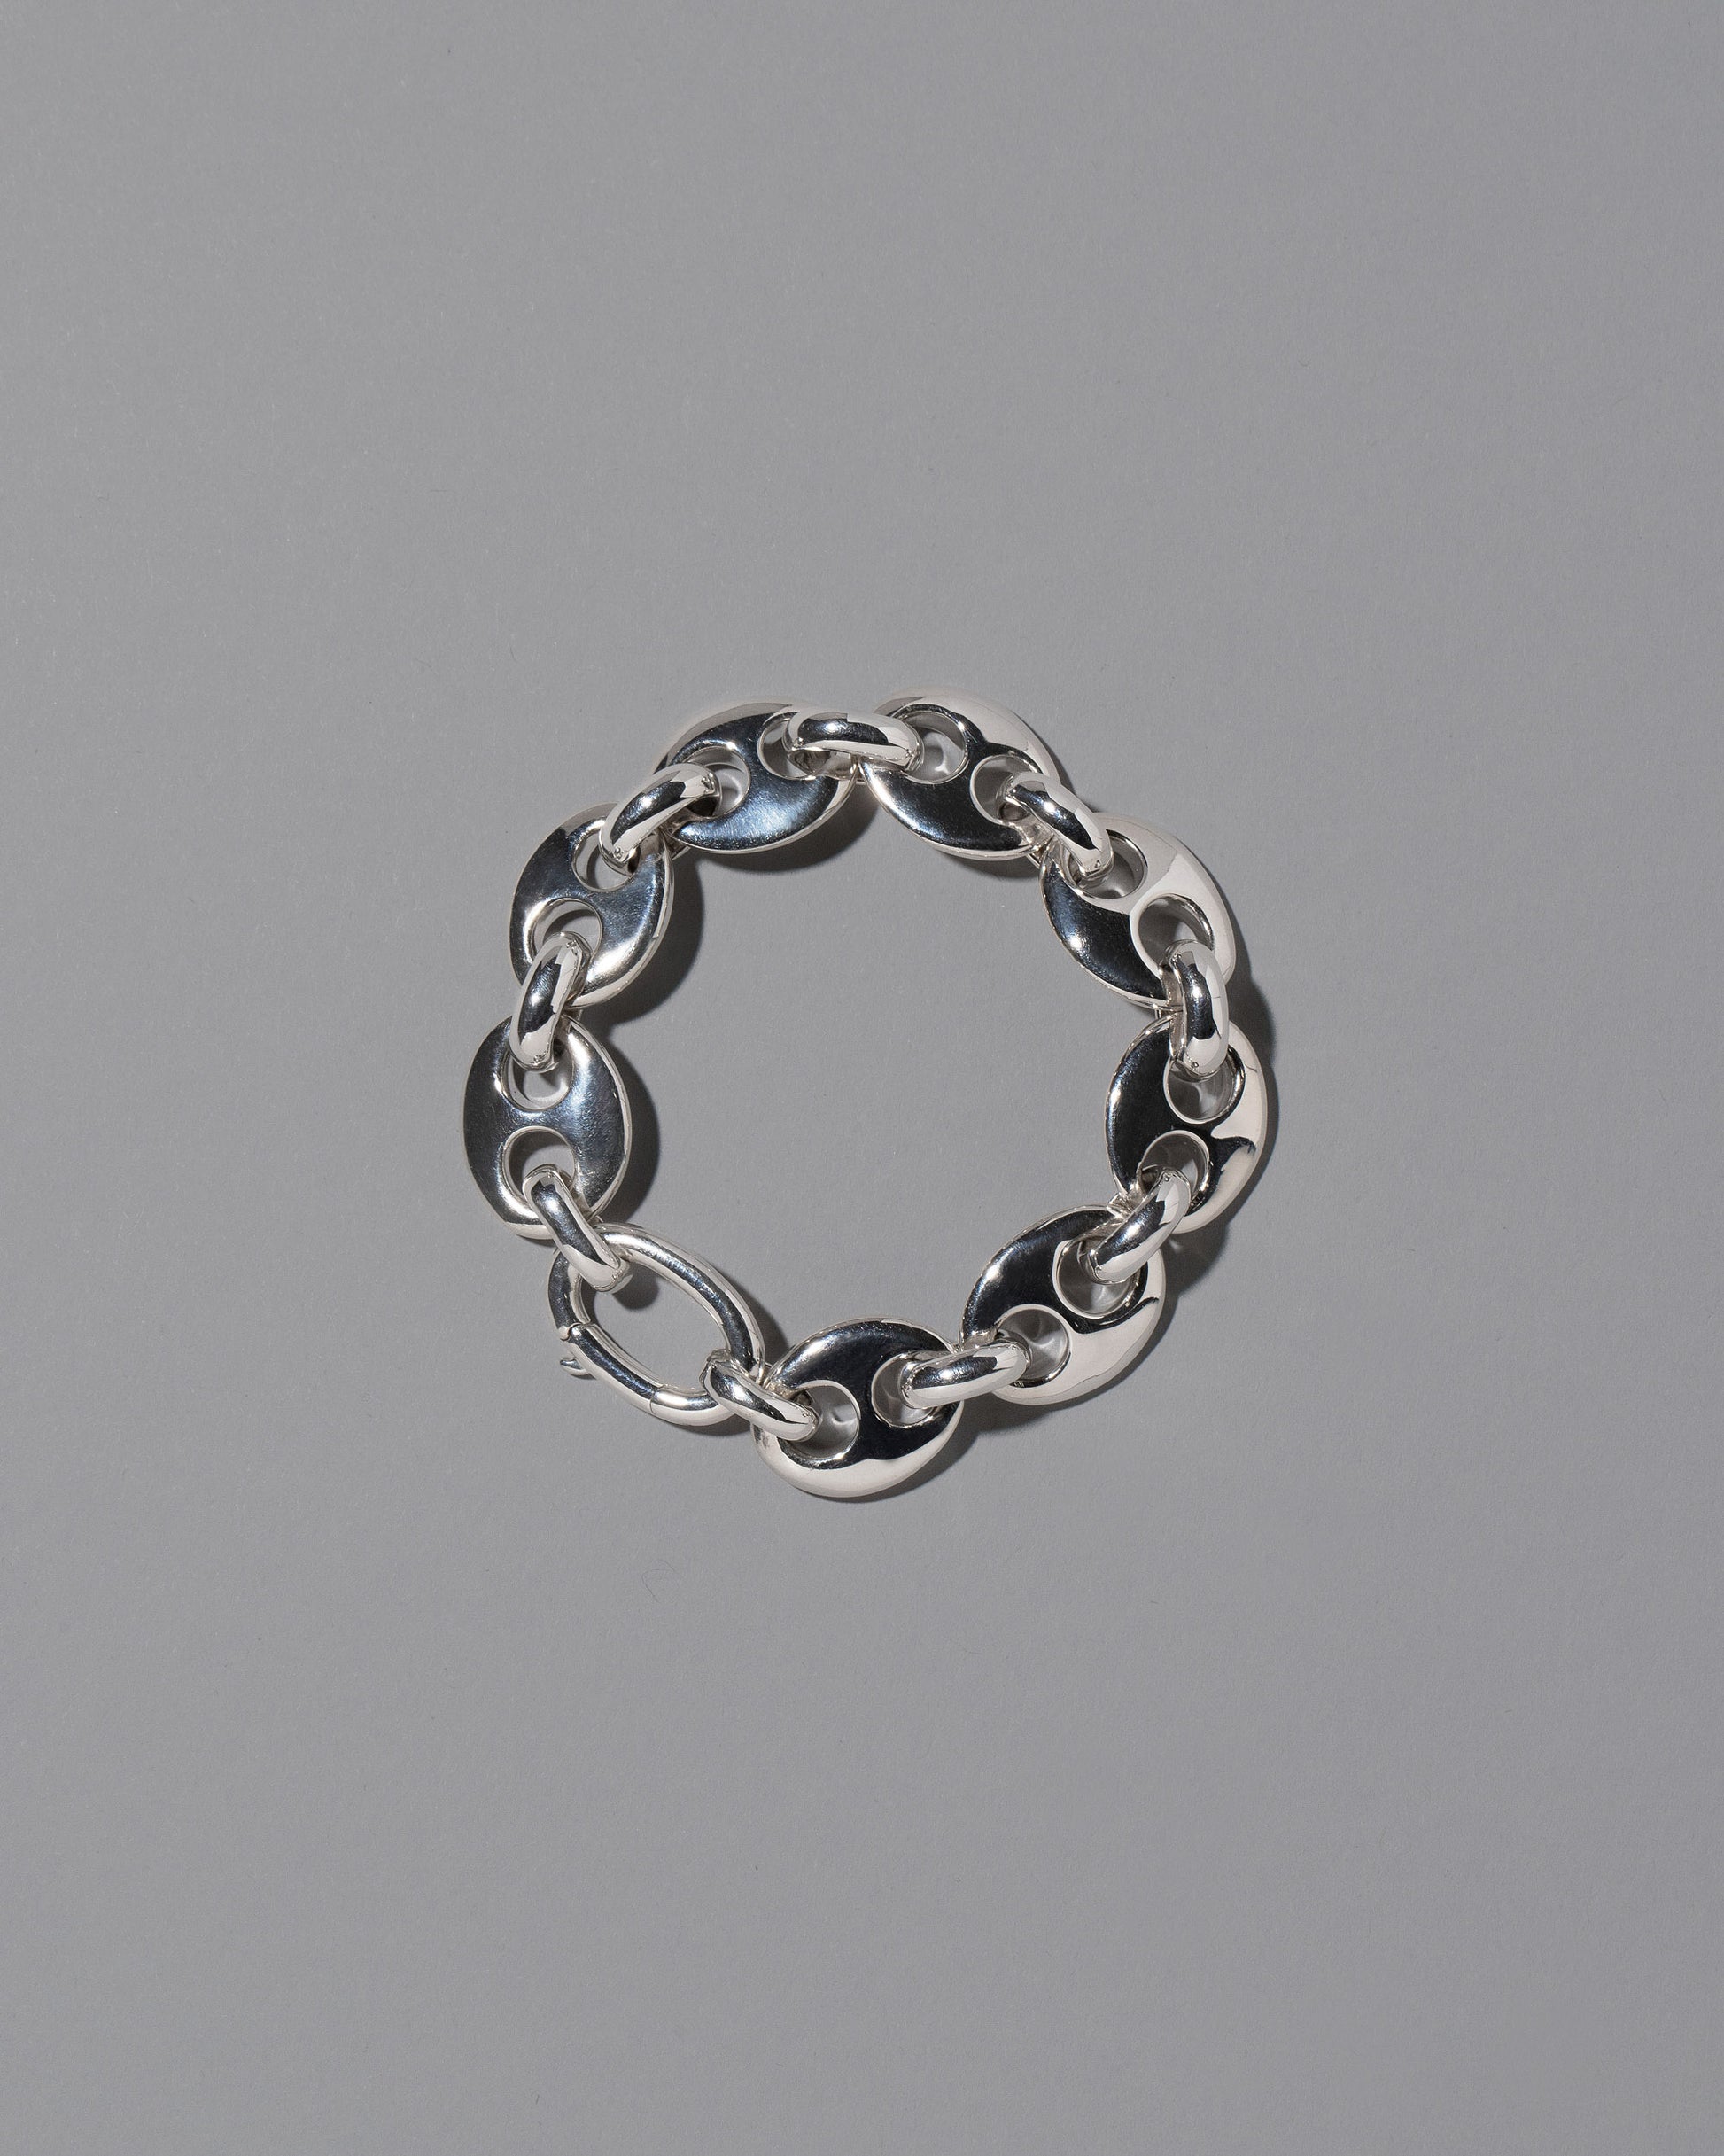 CRZM Sterling Silver Bedrock Bracelet on light color background.